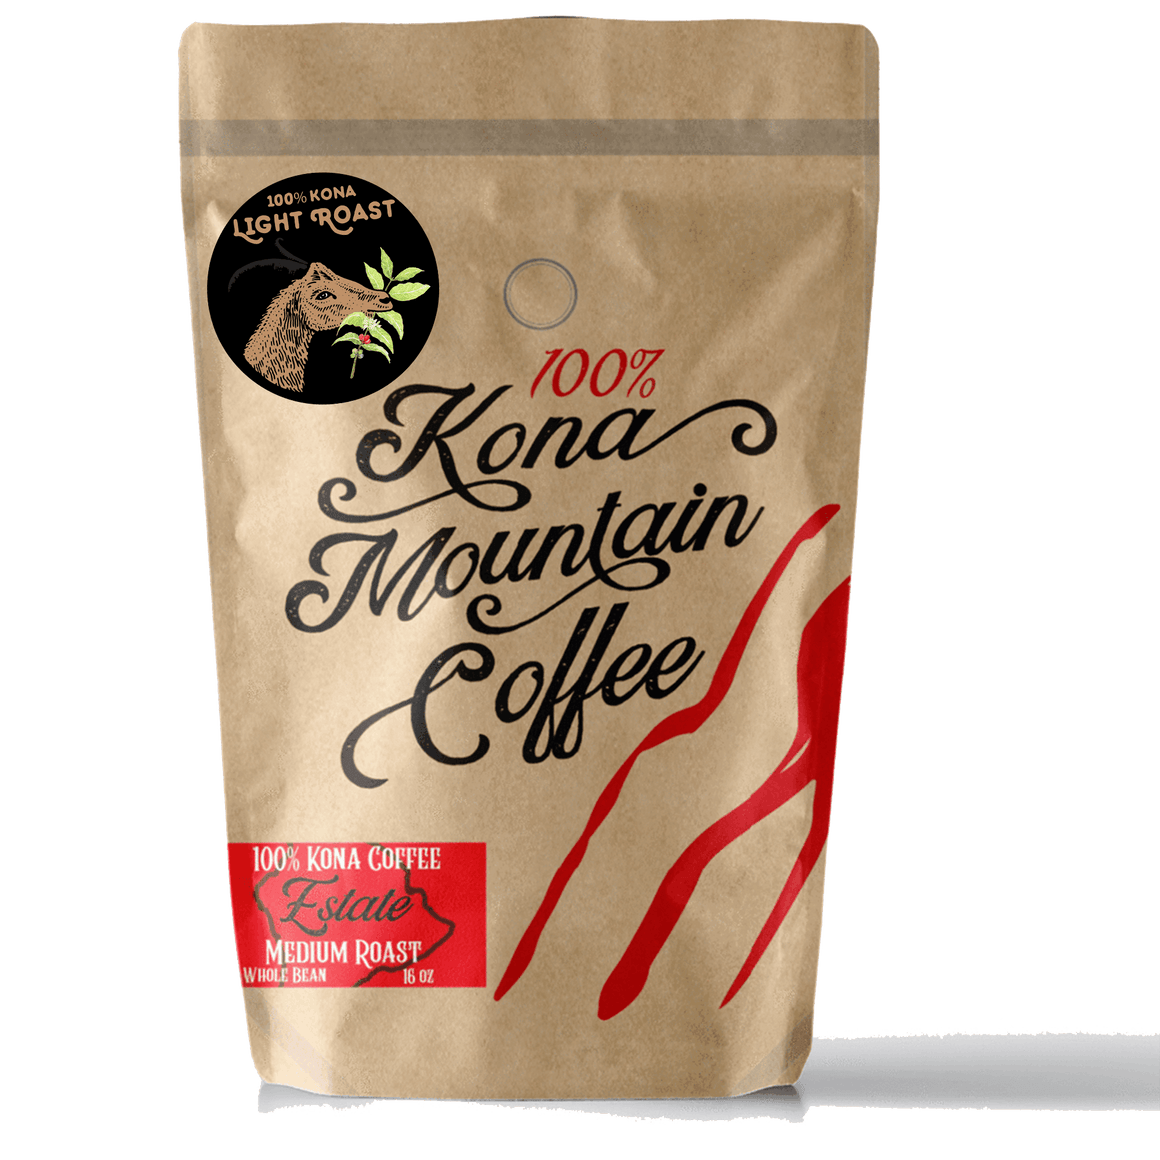 100% Kona Coffee Estate Light Roast - Kona Mountain Coffee